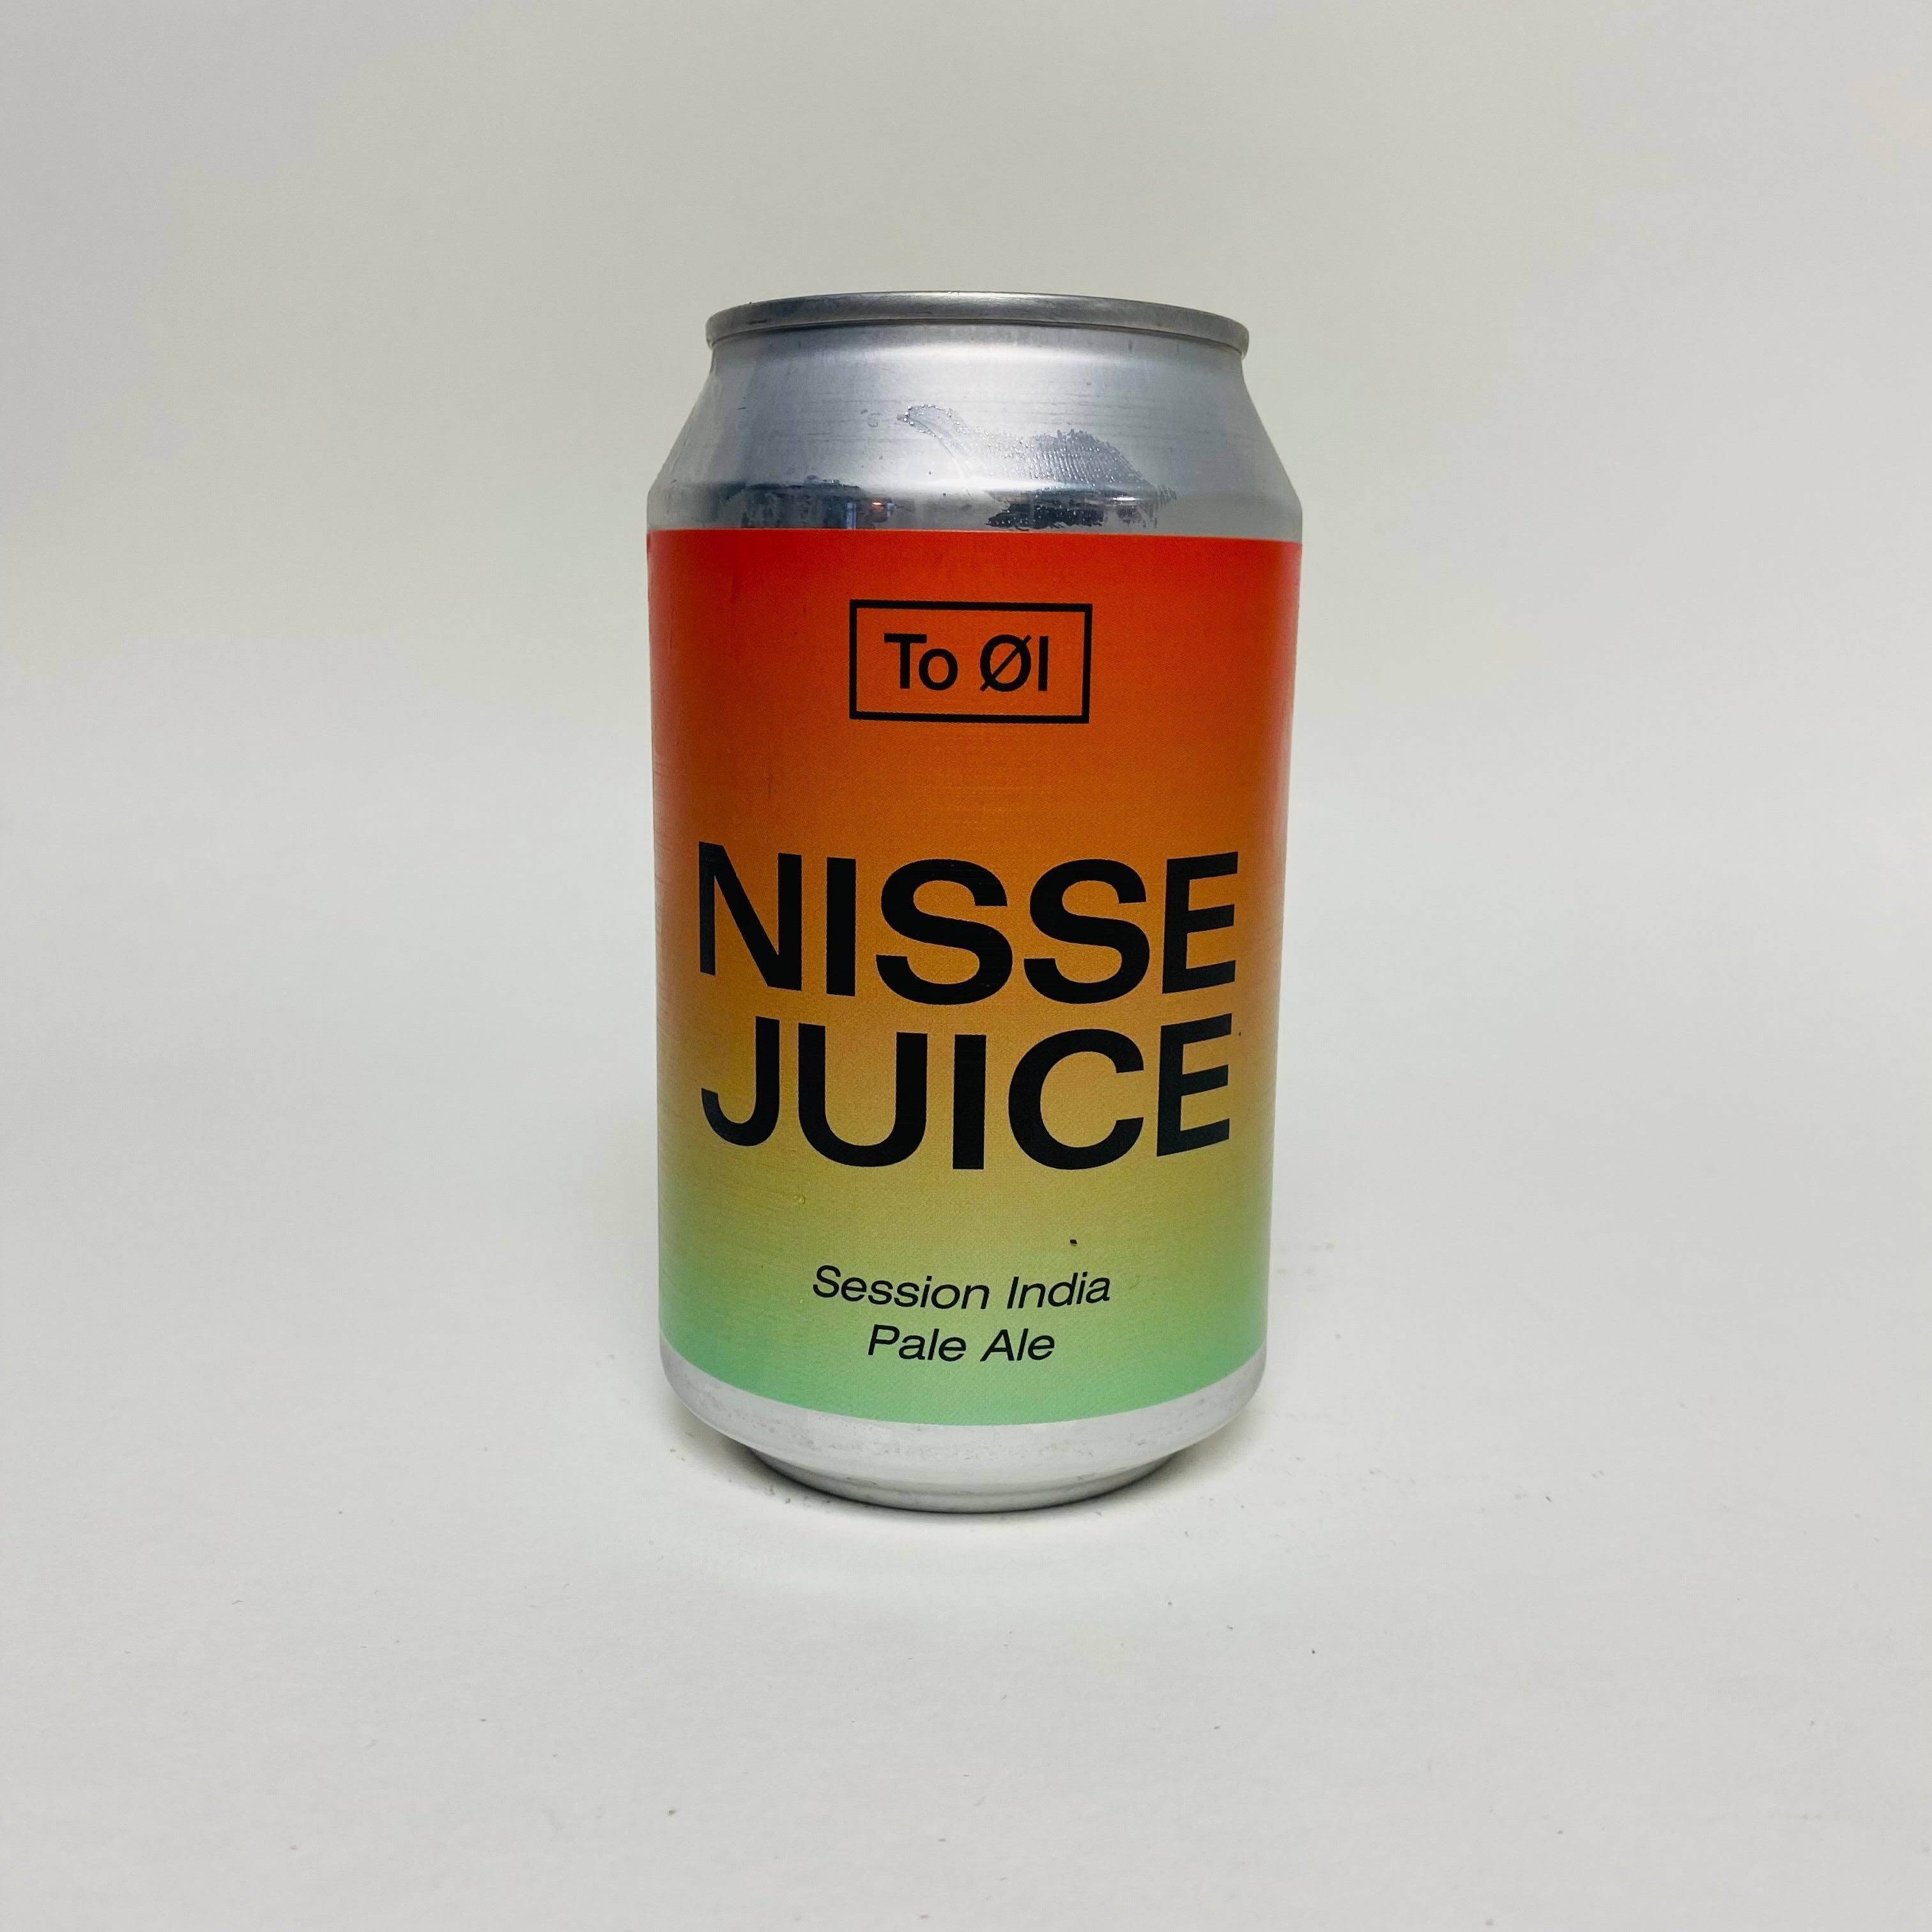 Nissejuice - to Øl